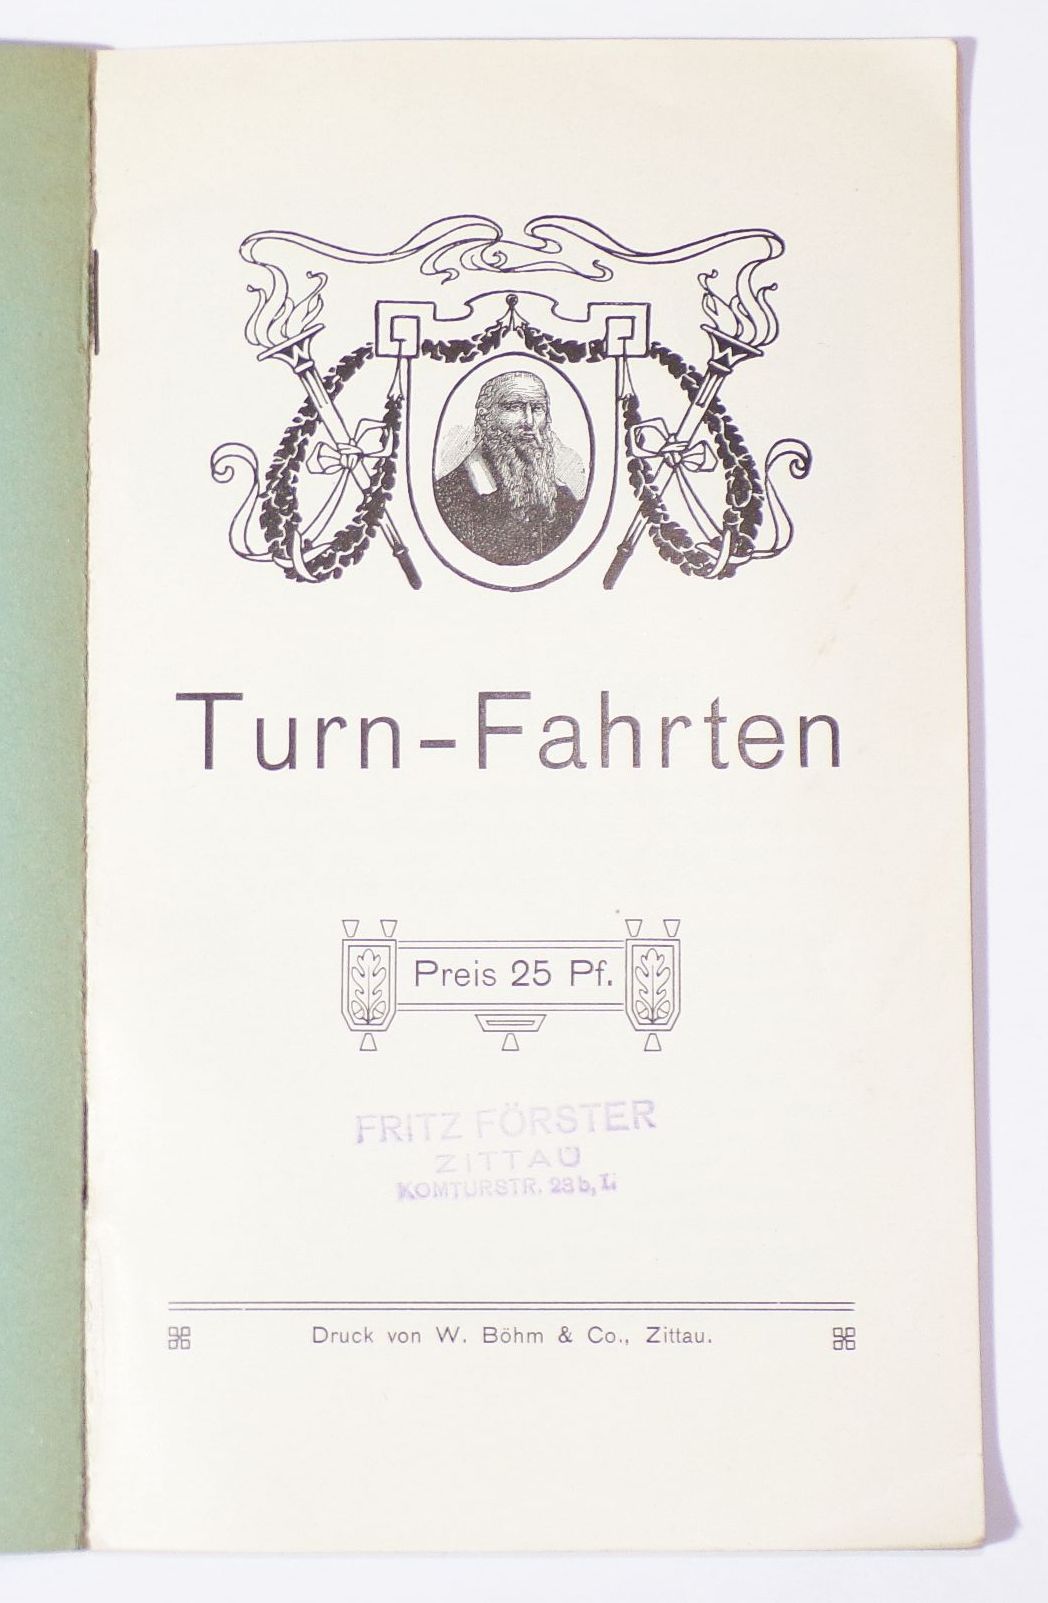 Turn Fahrten Turnverein Zittau um 1910 Oberlausitz 